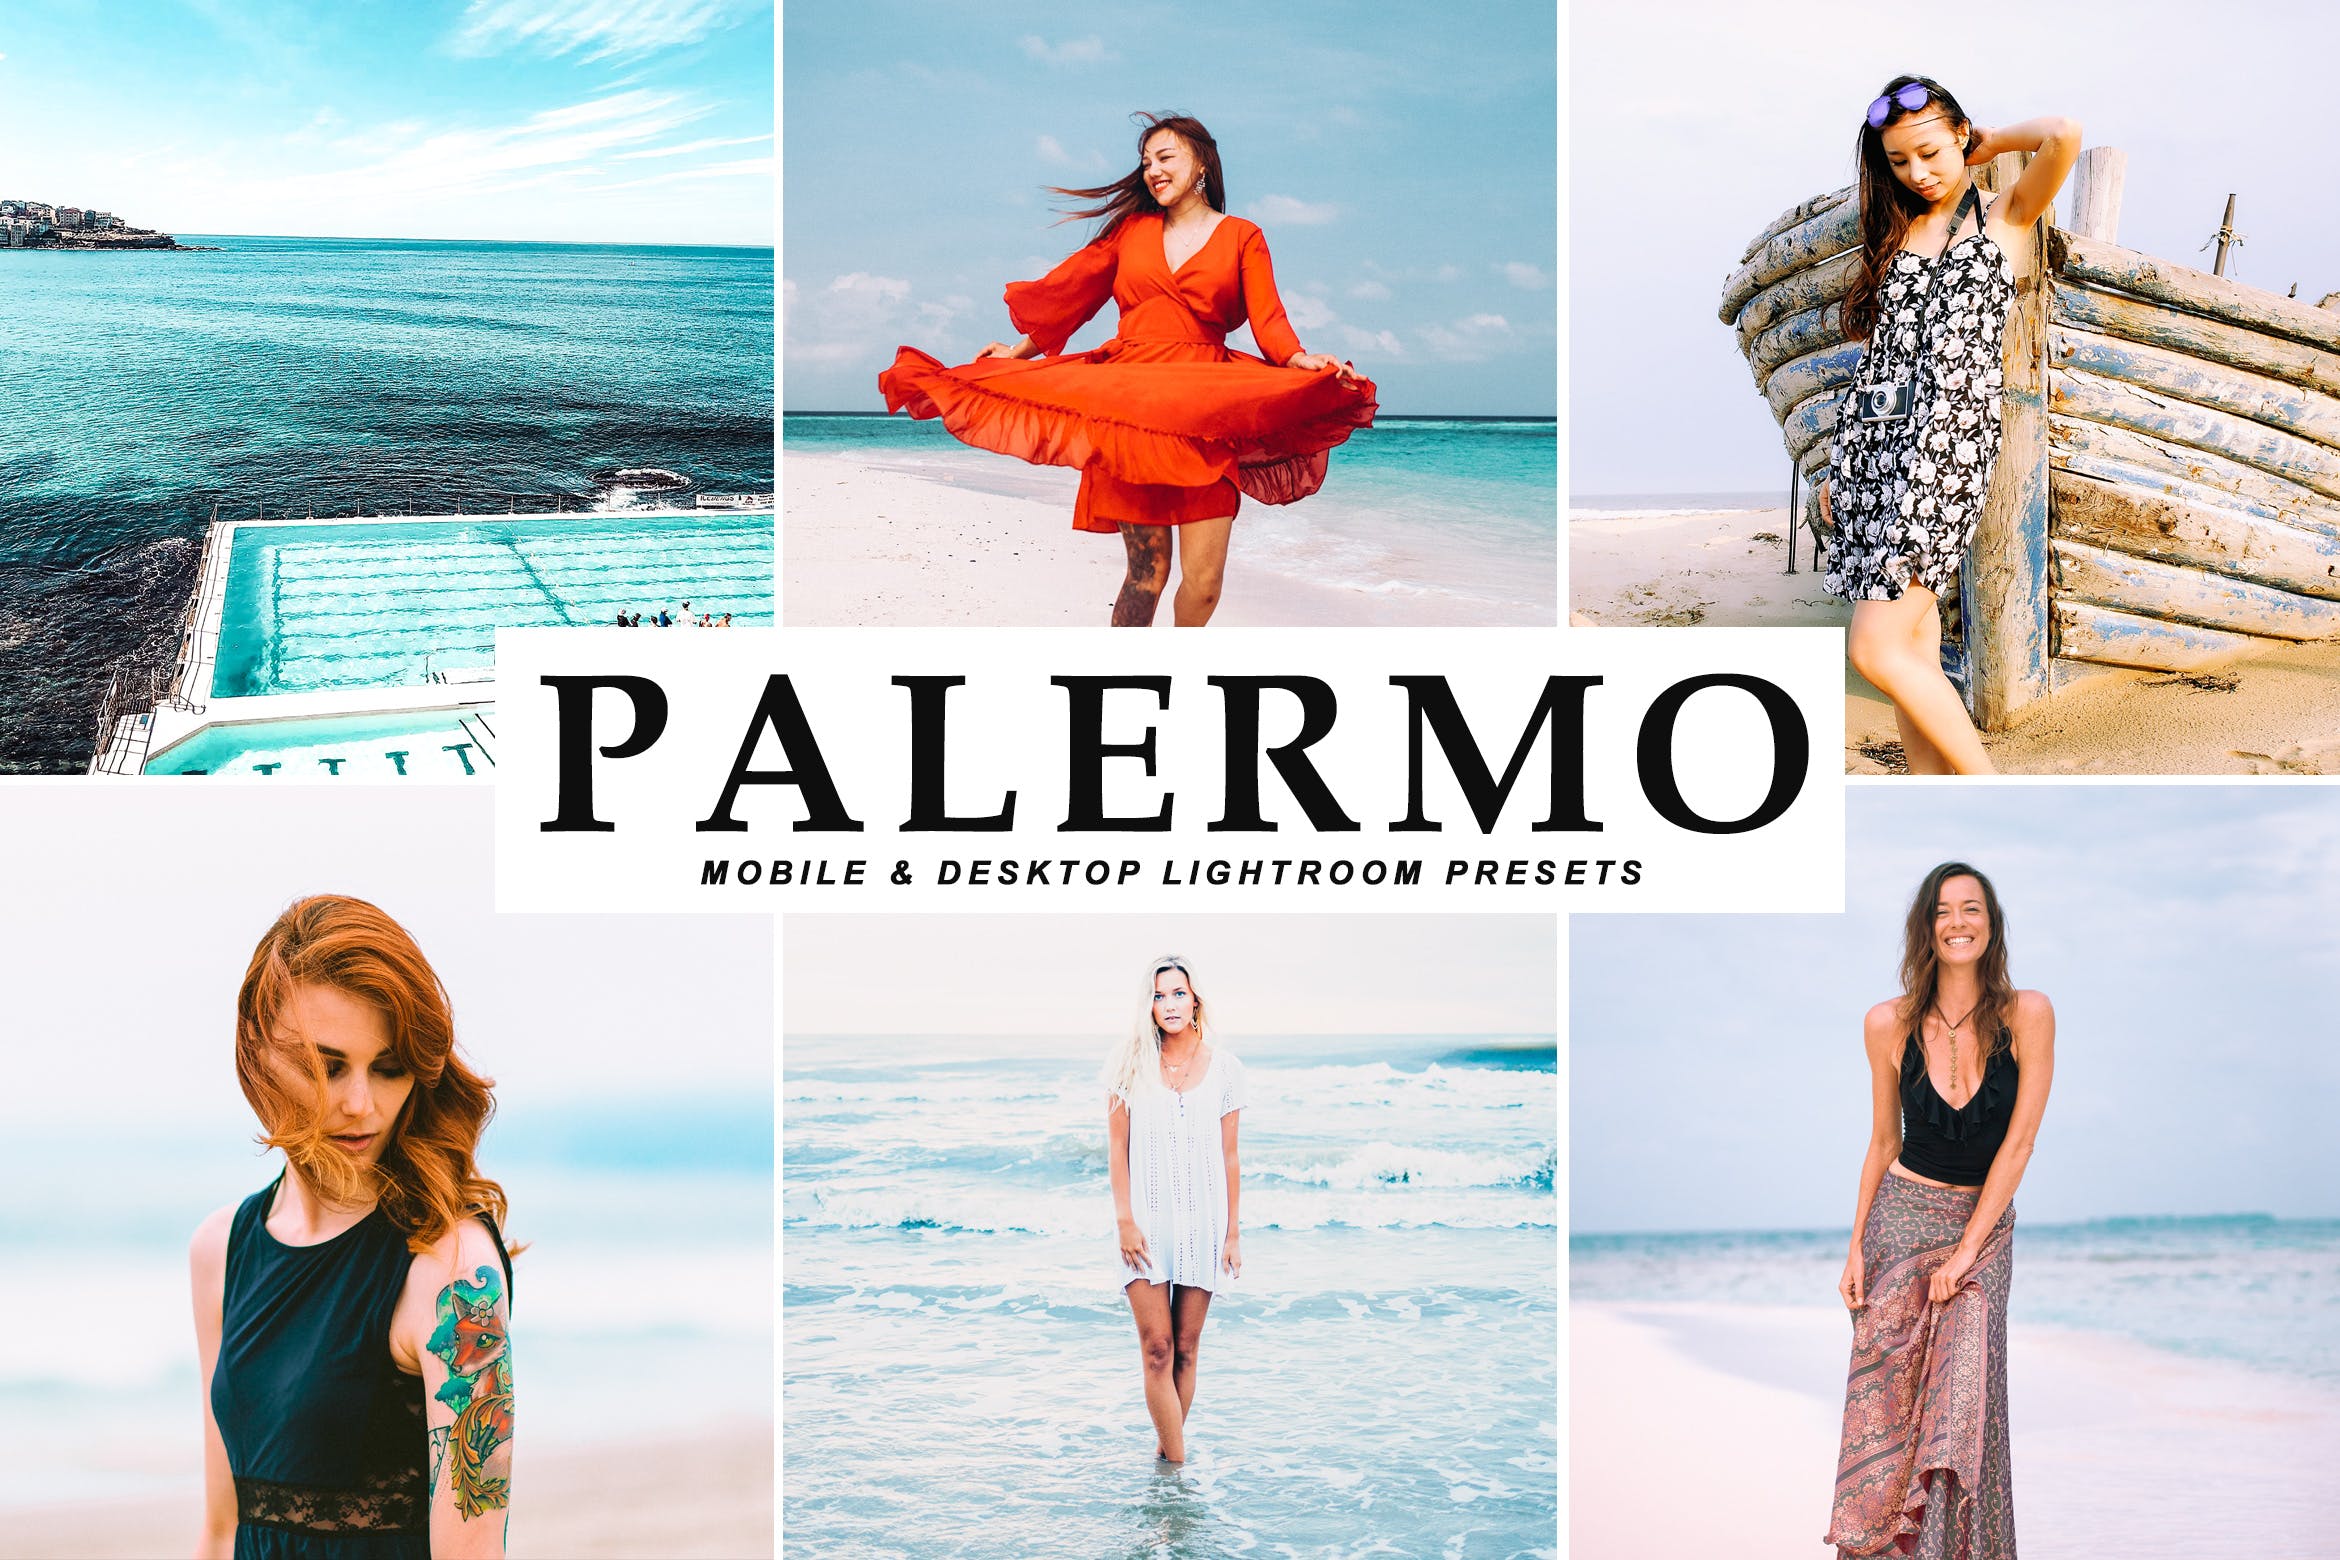 沙滩海岛阳光照片调色滤镜第一素材精选LR预设 Palermo Mobile & Desktop Lightroom Presets插图